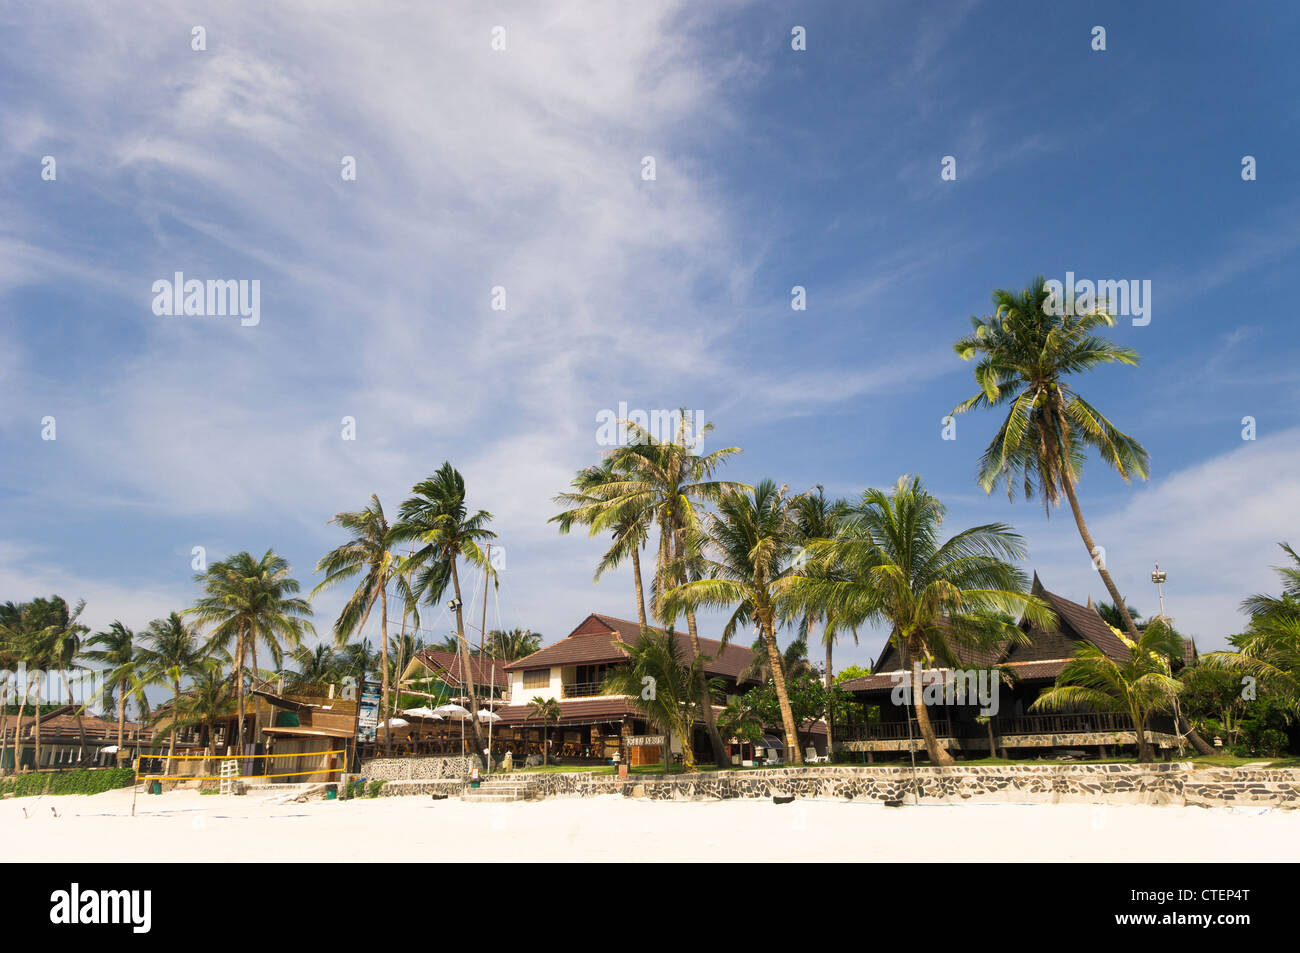 Haad Rin plage de sable blanc de Koh Phangan, Thaïlande de full moon party emplacement. Banque D'Images